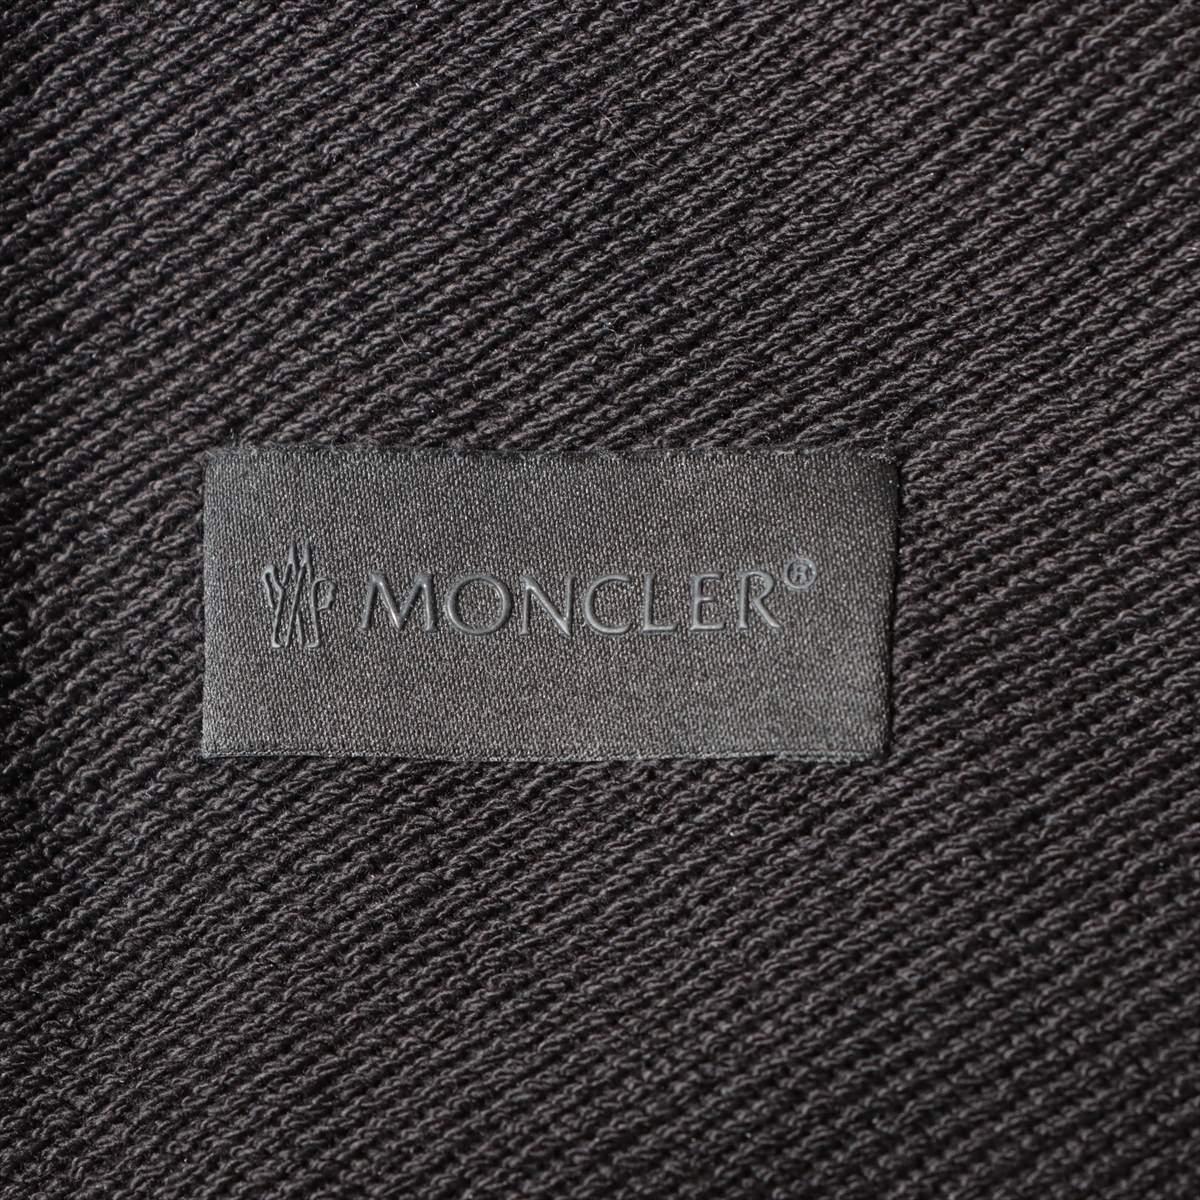 モンクレール コットン スウェットパンツ S メンズ ブラック  H20918H00015 ロゴ刺繍ほつれ 膝の生地に使用感あり